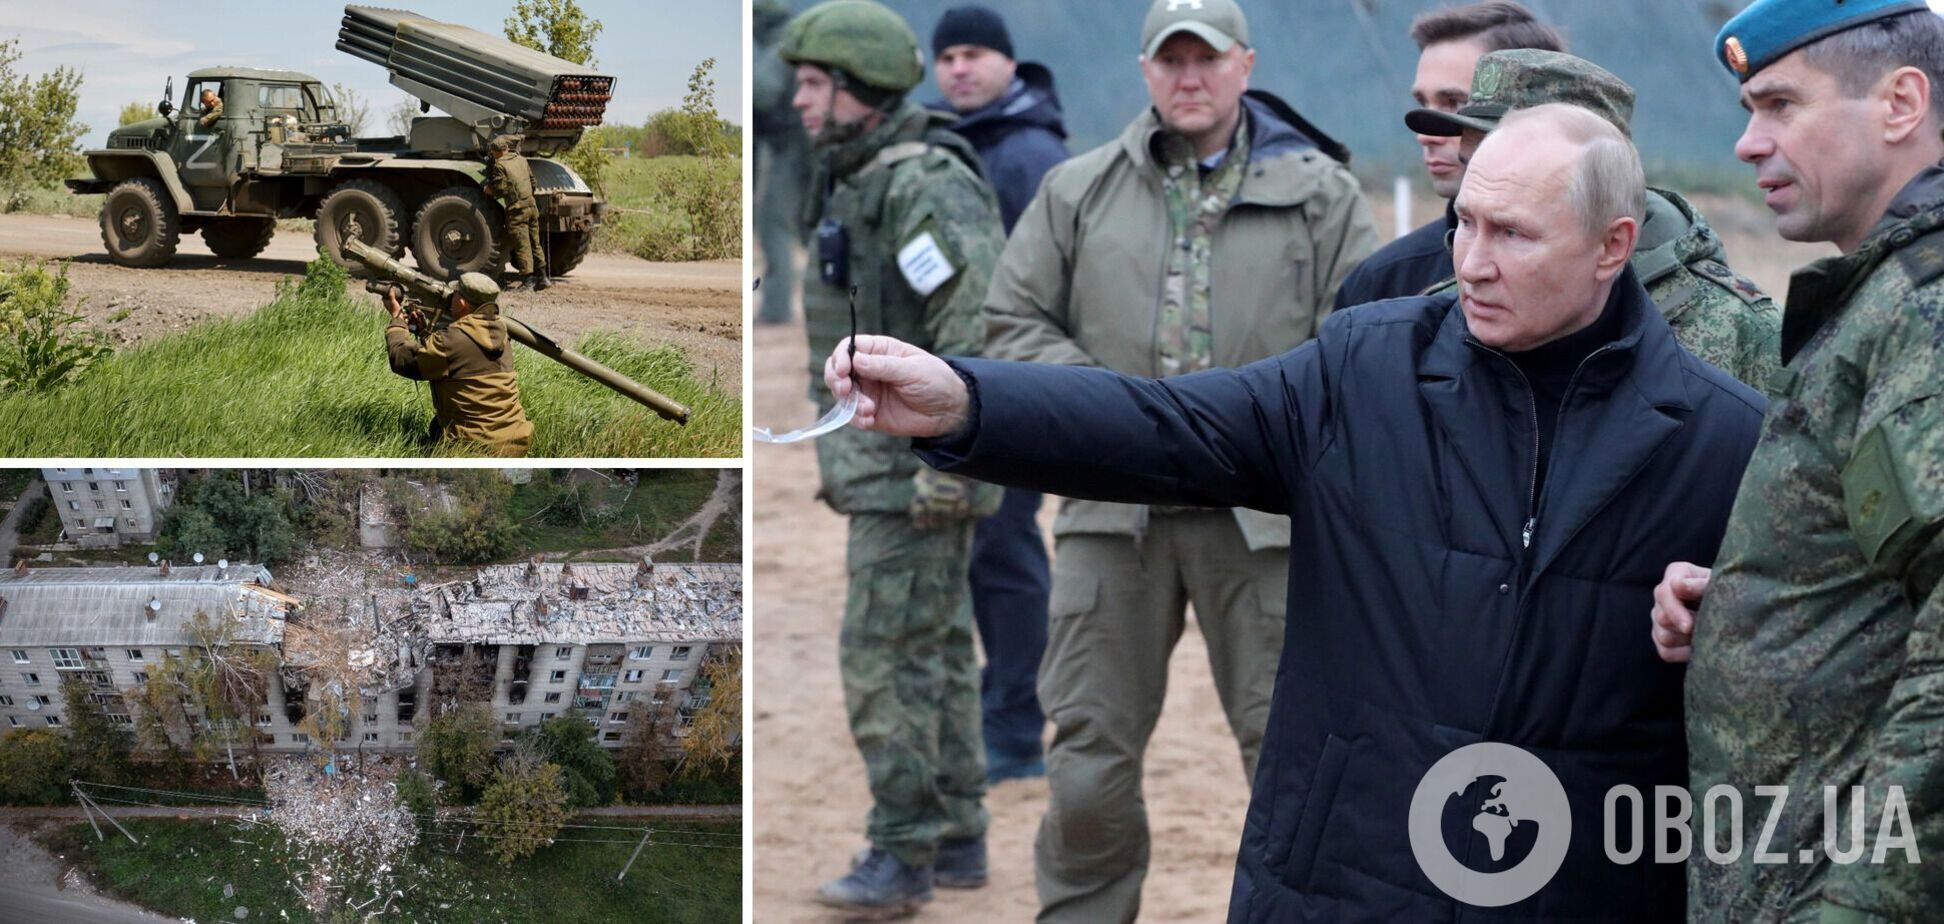 Путин не отказался от 'максималистских' целей в войне против Украины: в ISW проанализировали заявления